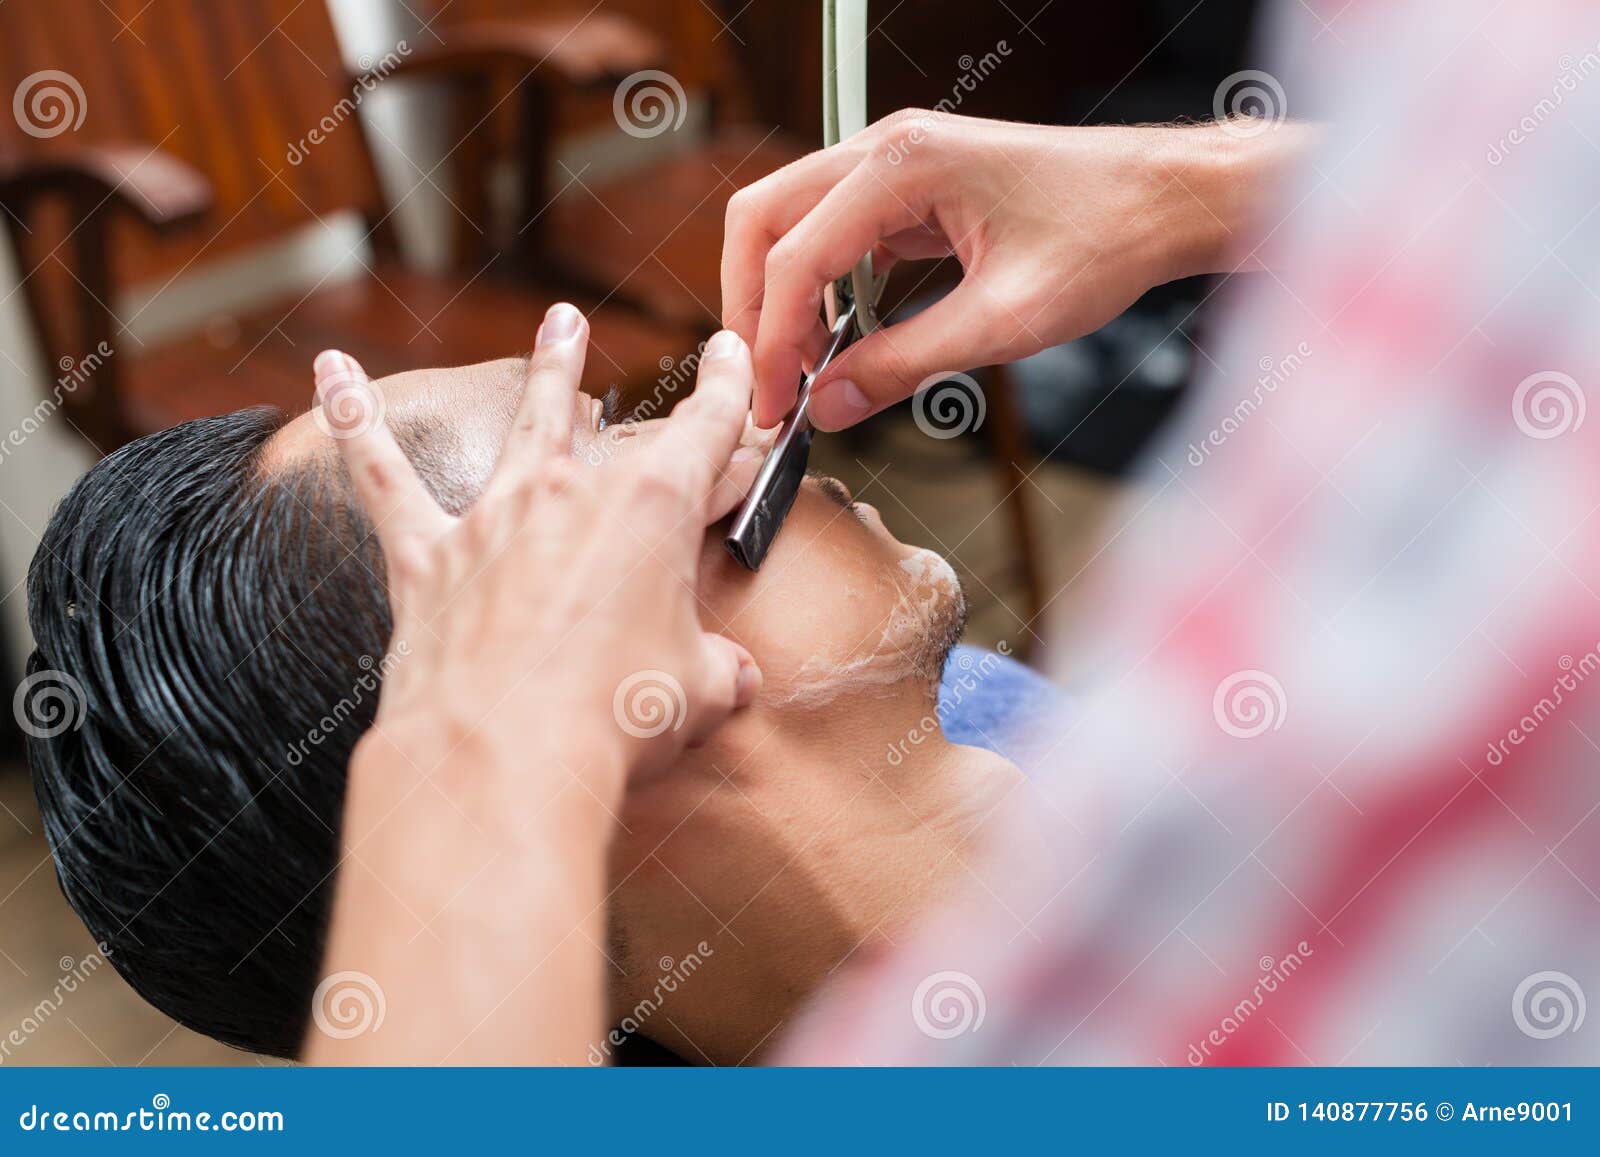 salon straight razor head shave video